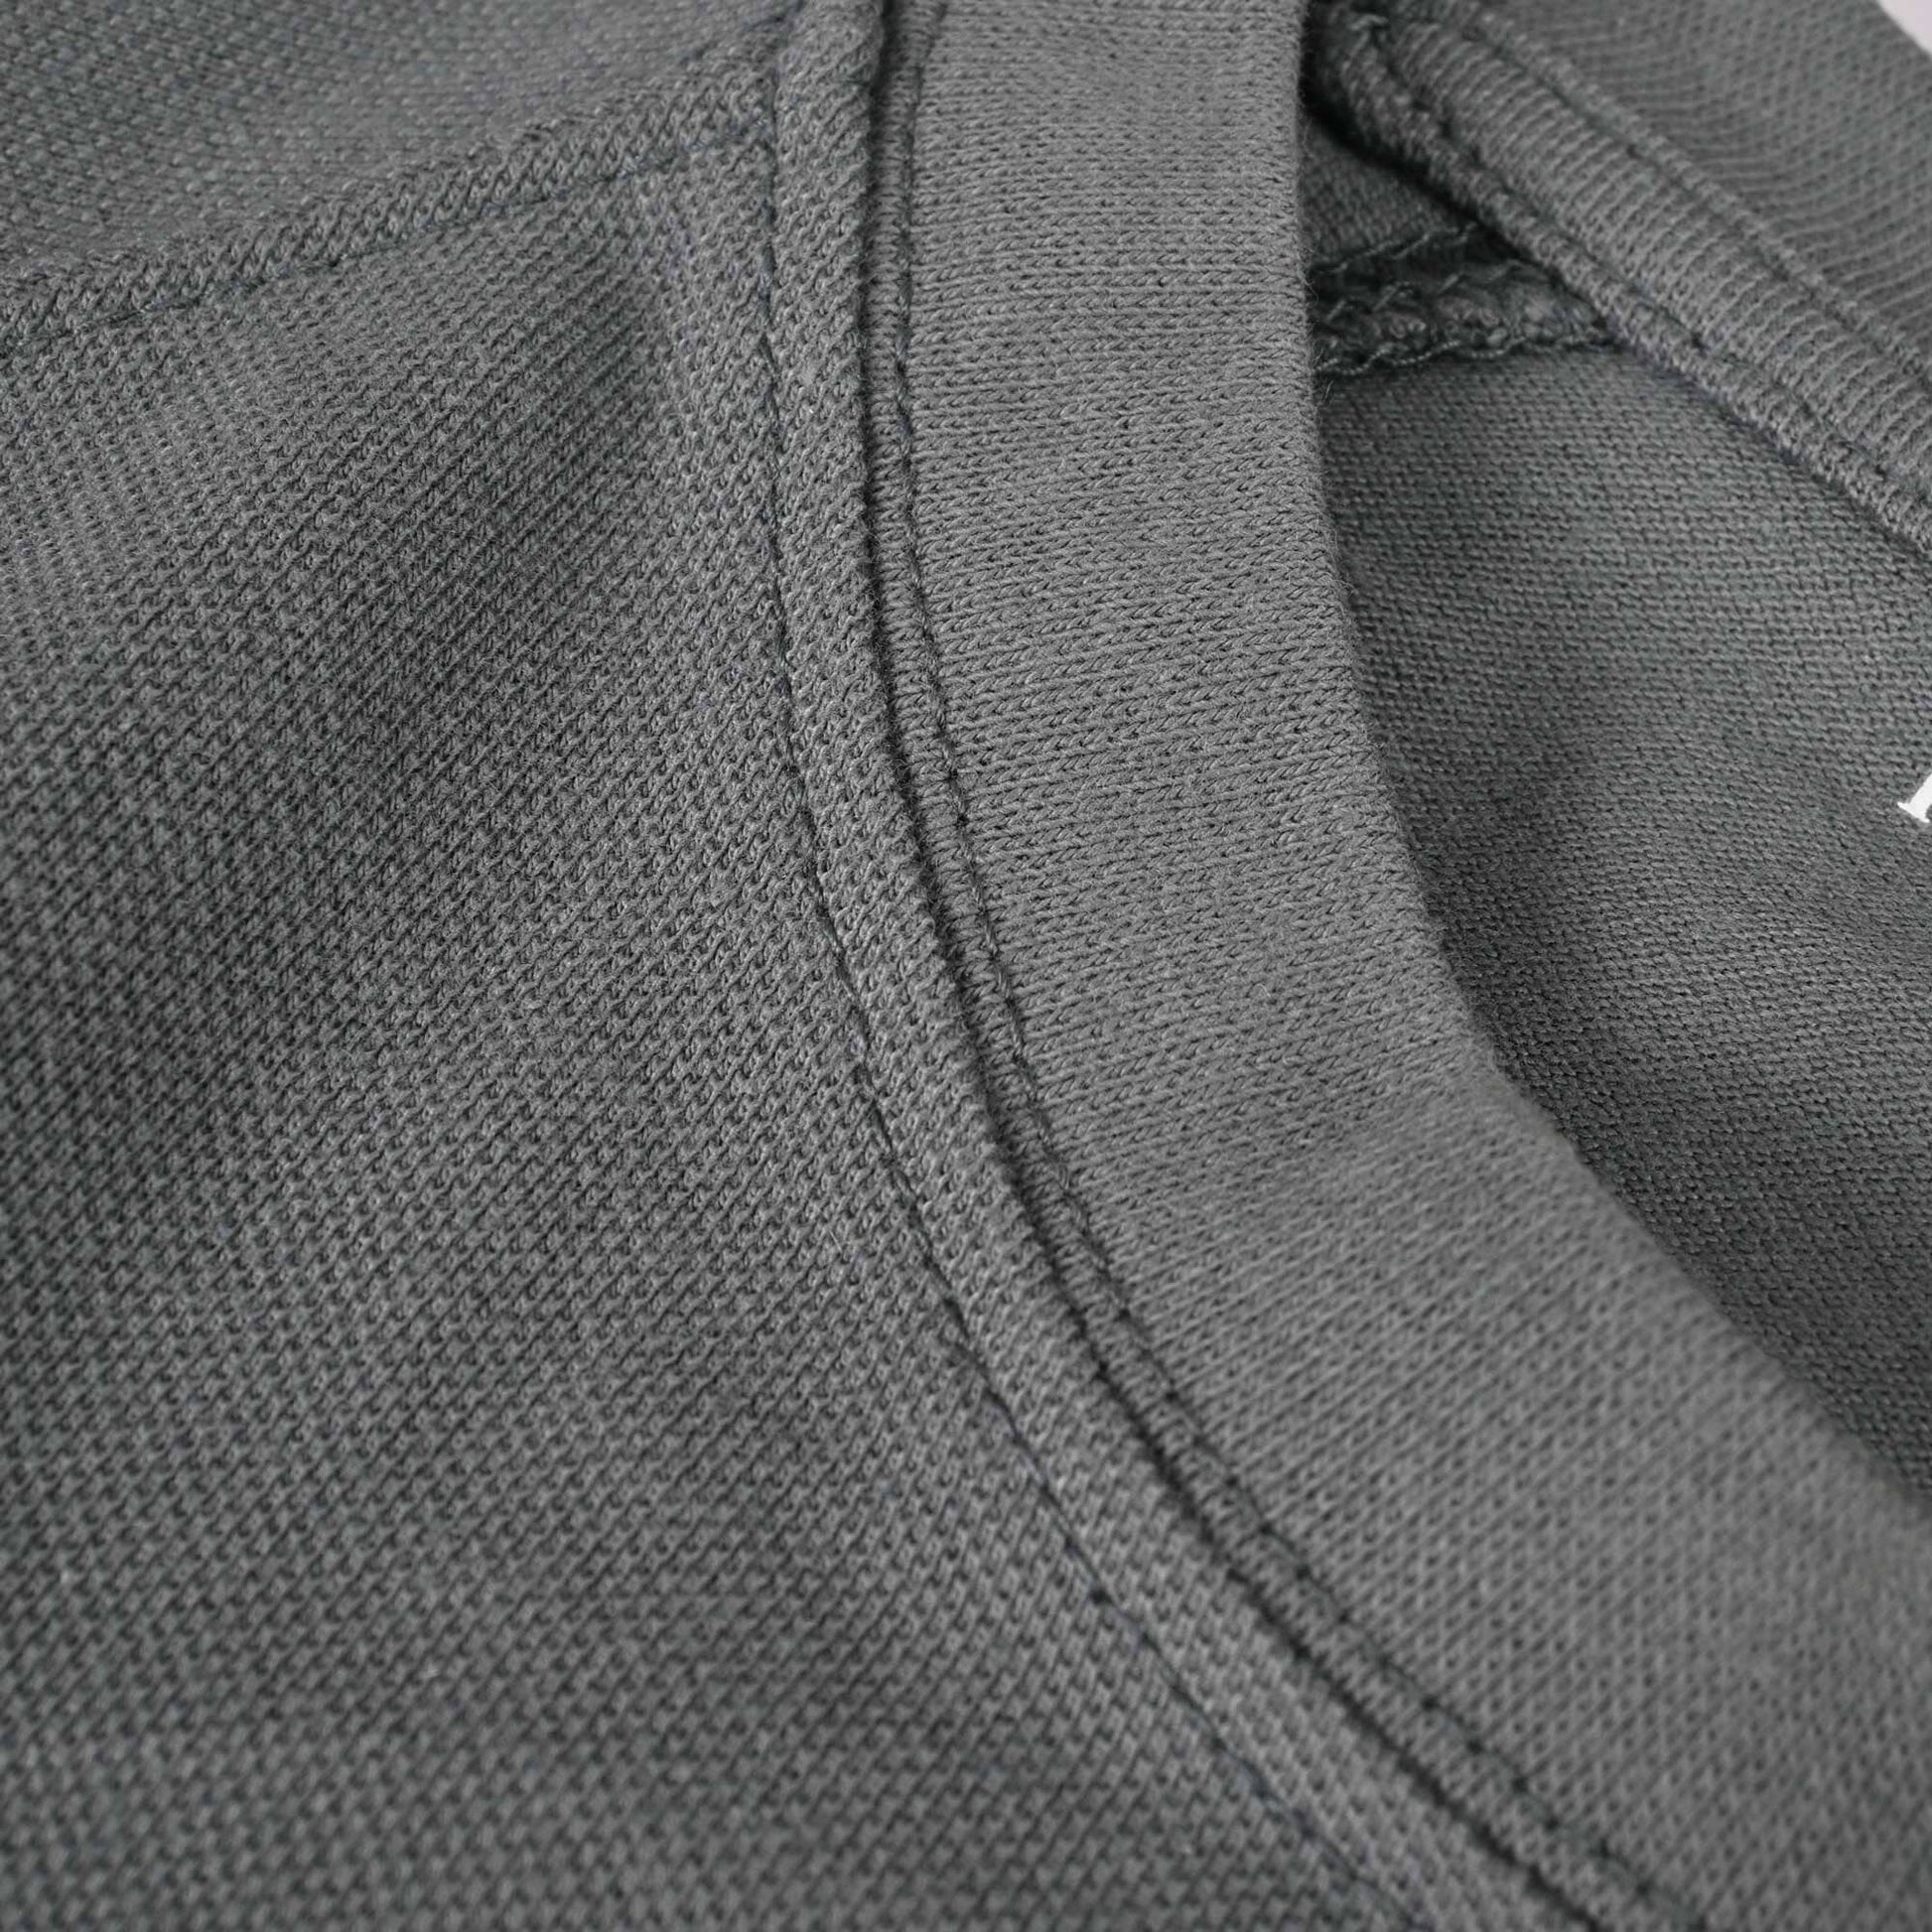 Polo Republica Men's PRC Crest Embroidered Raglan Sleeve Pique Tee Shirt Men's Tee Shirt Polo Republica 